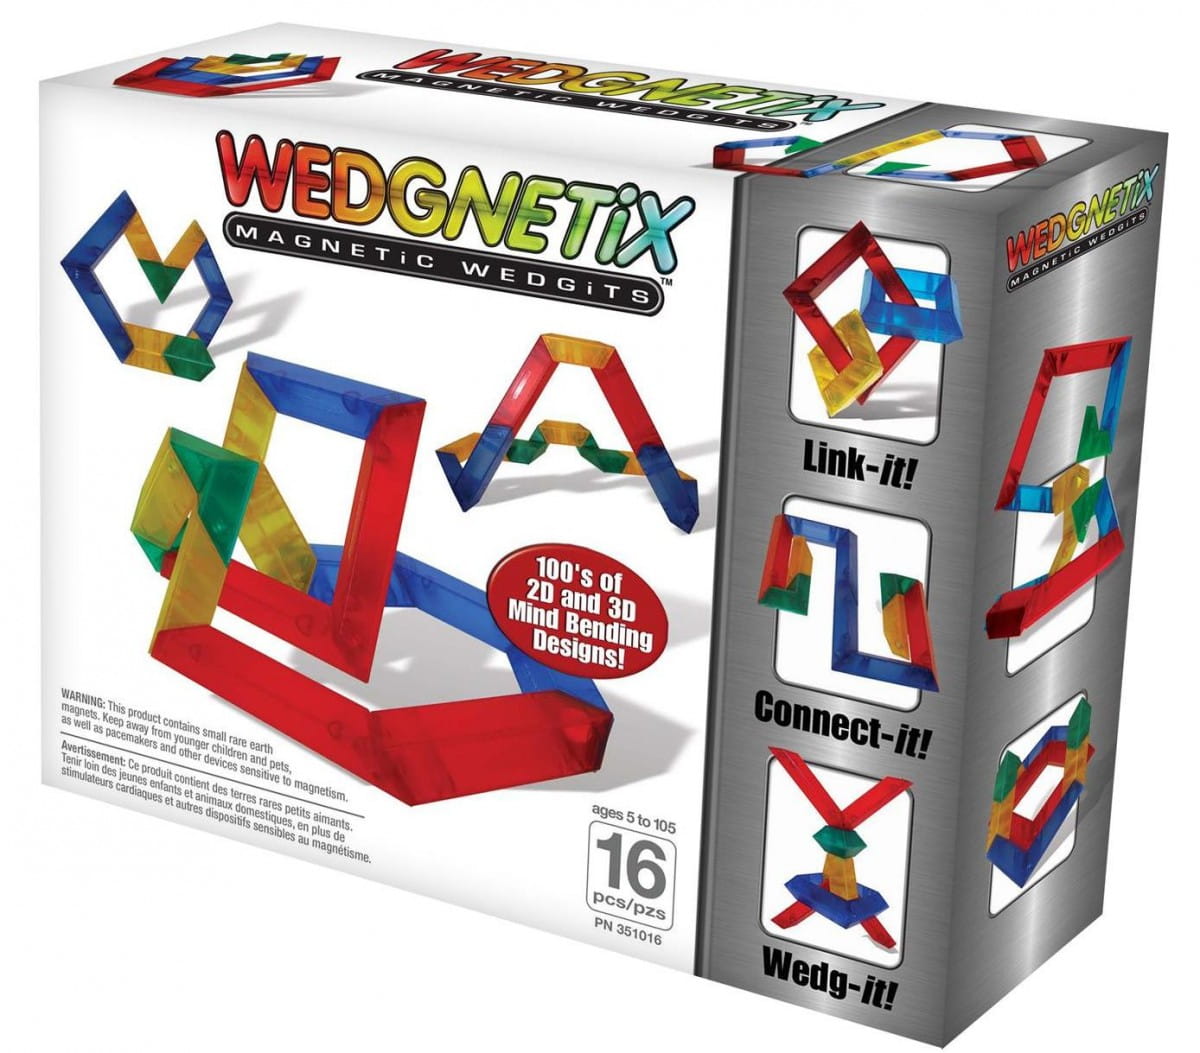   Wedgits Wedgnetix - 16 